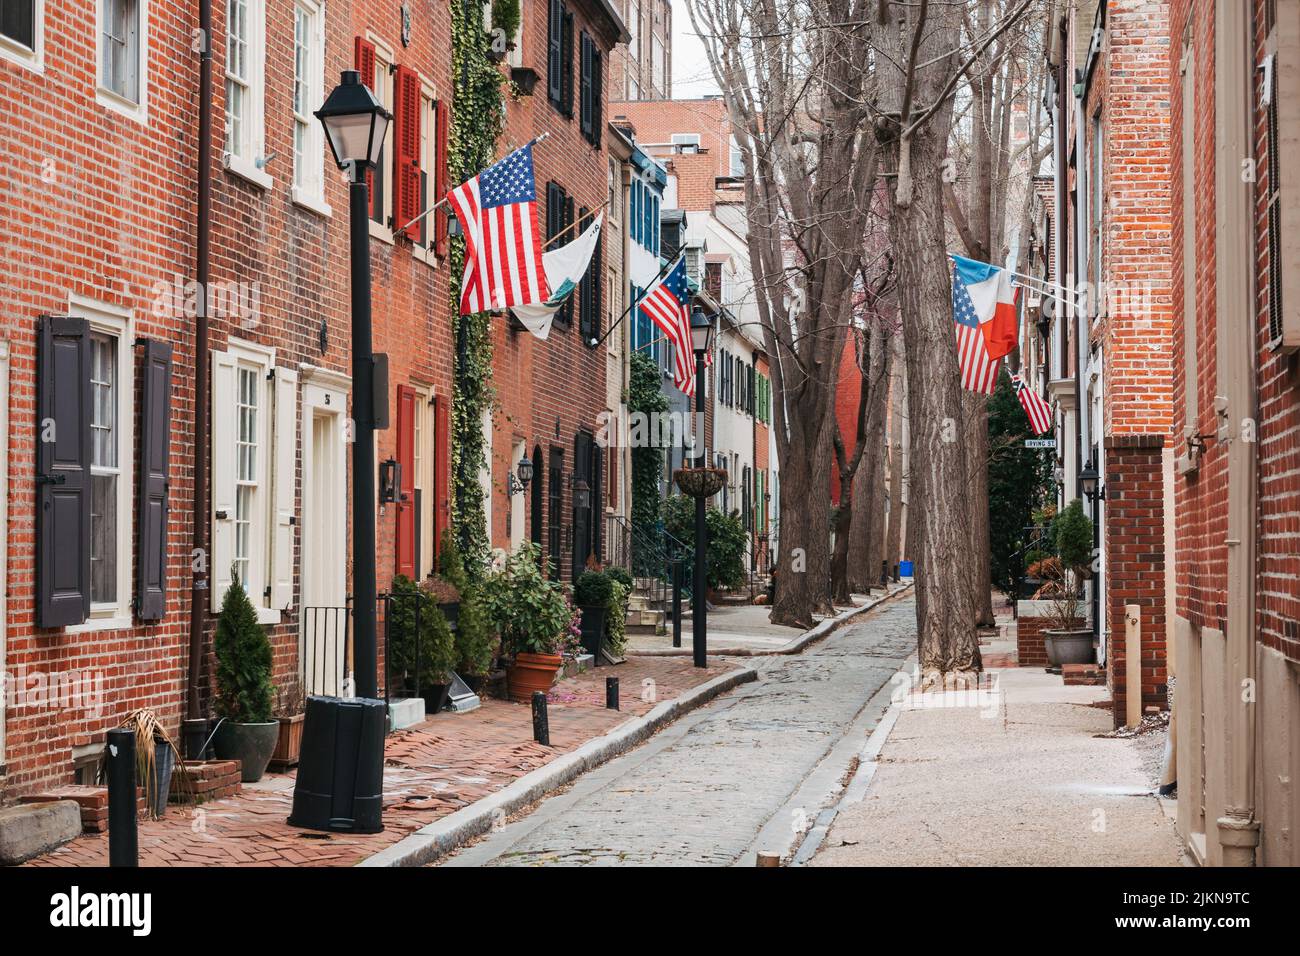 Bandiere americane e francesi provenienti da case a schiera di mattoni in una strada stretta a Philadelphia, Stati Uniti Foto Stock